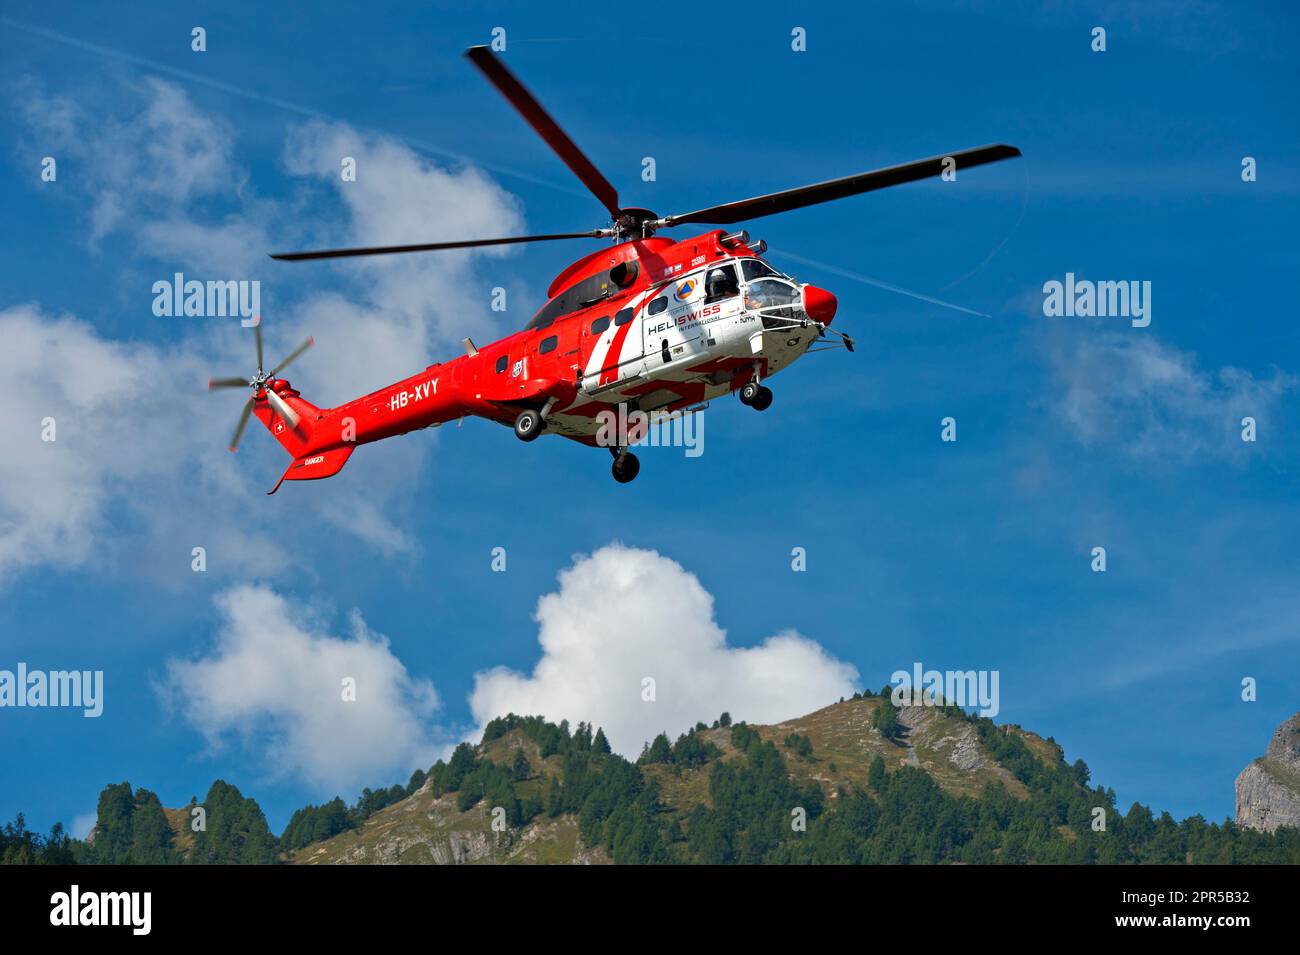 Multifunktionaler Transporthubschrauber AS 332 Super Puma C1 HB-XVY von Heliswiss International AG auf einem Flug in den Pennine Alps, Valais, Schweiz Stockfoto